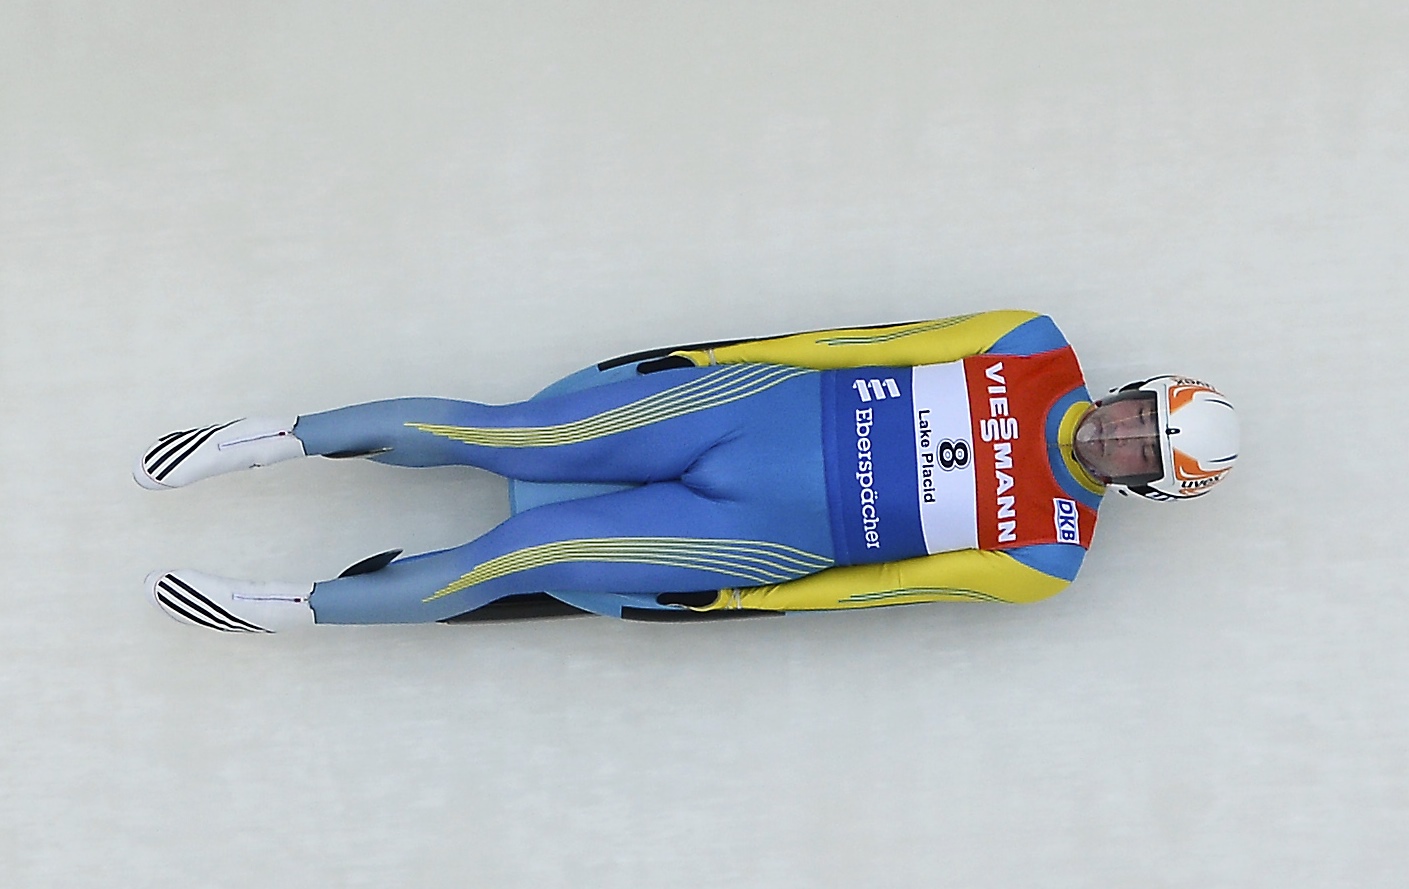 Андрей Кись завоевал право выступать на Олимпиаде в Сочи